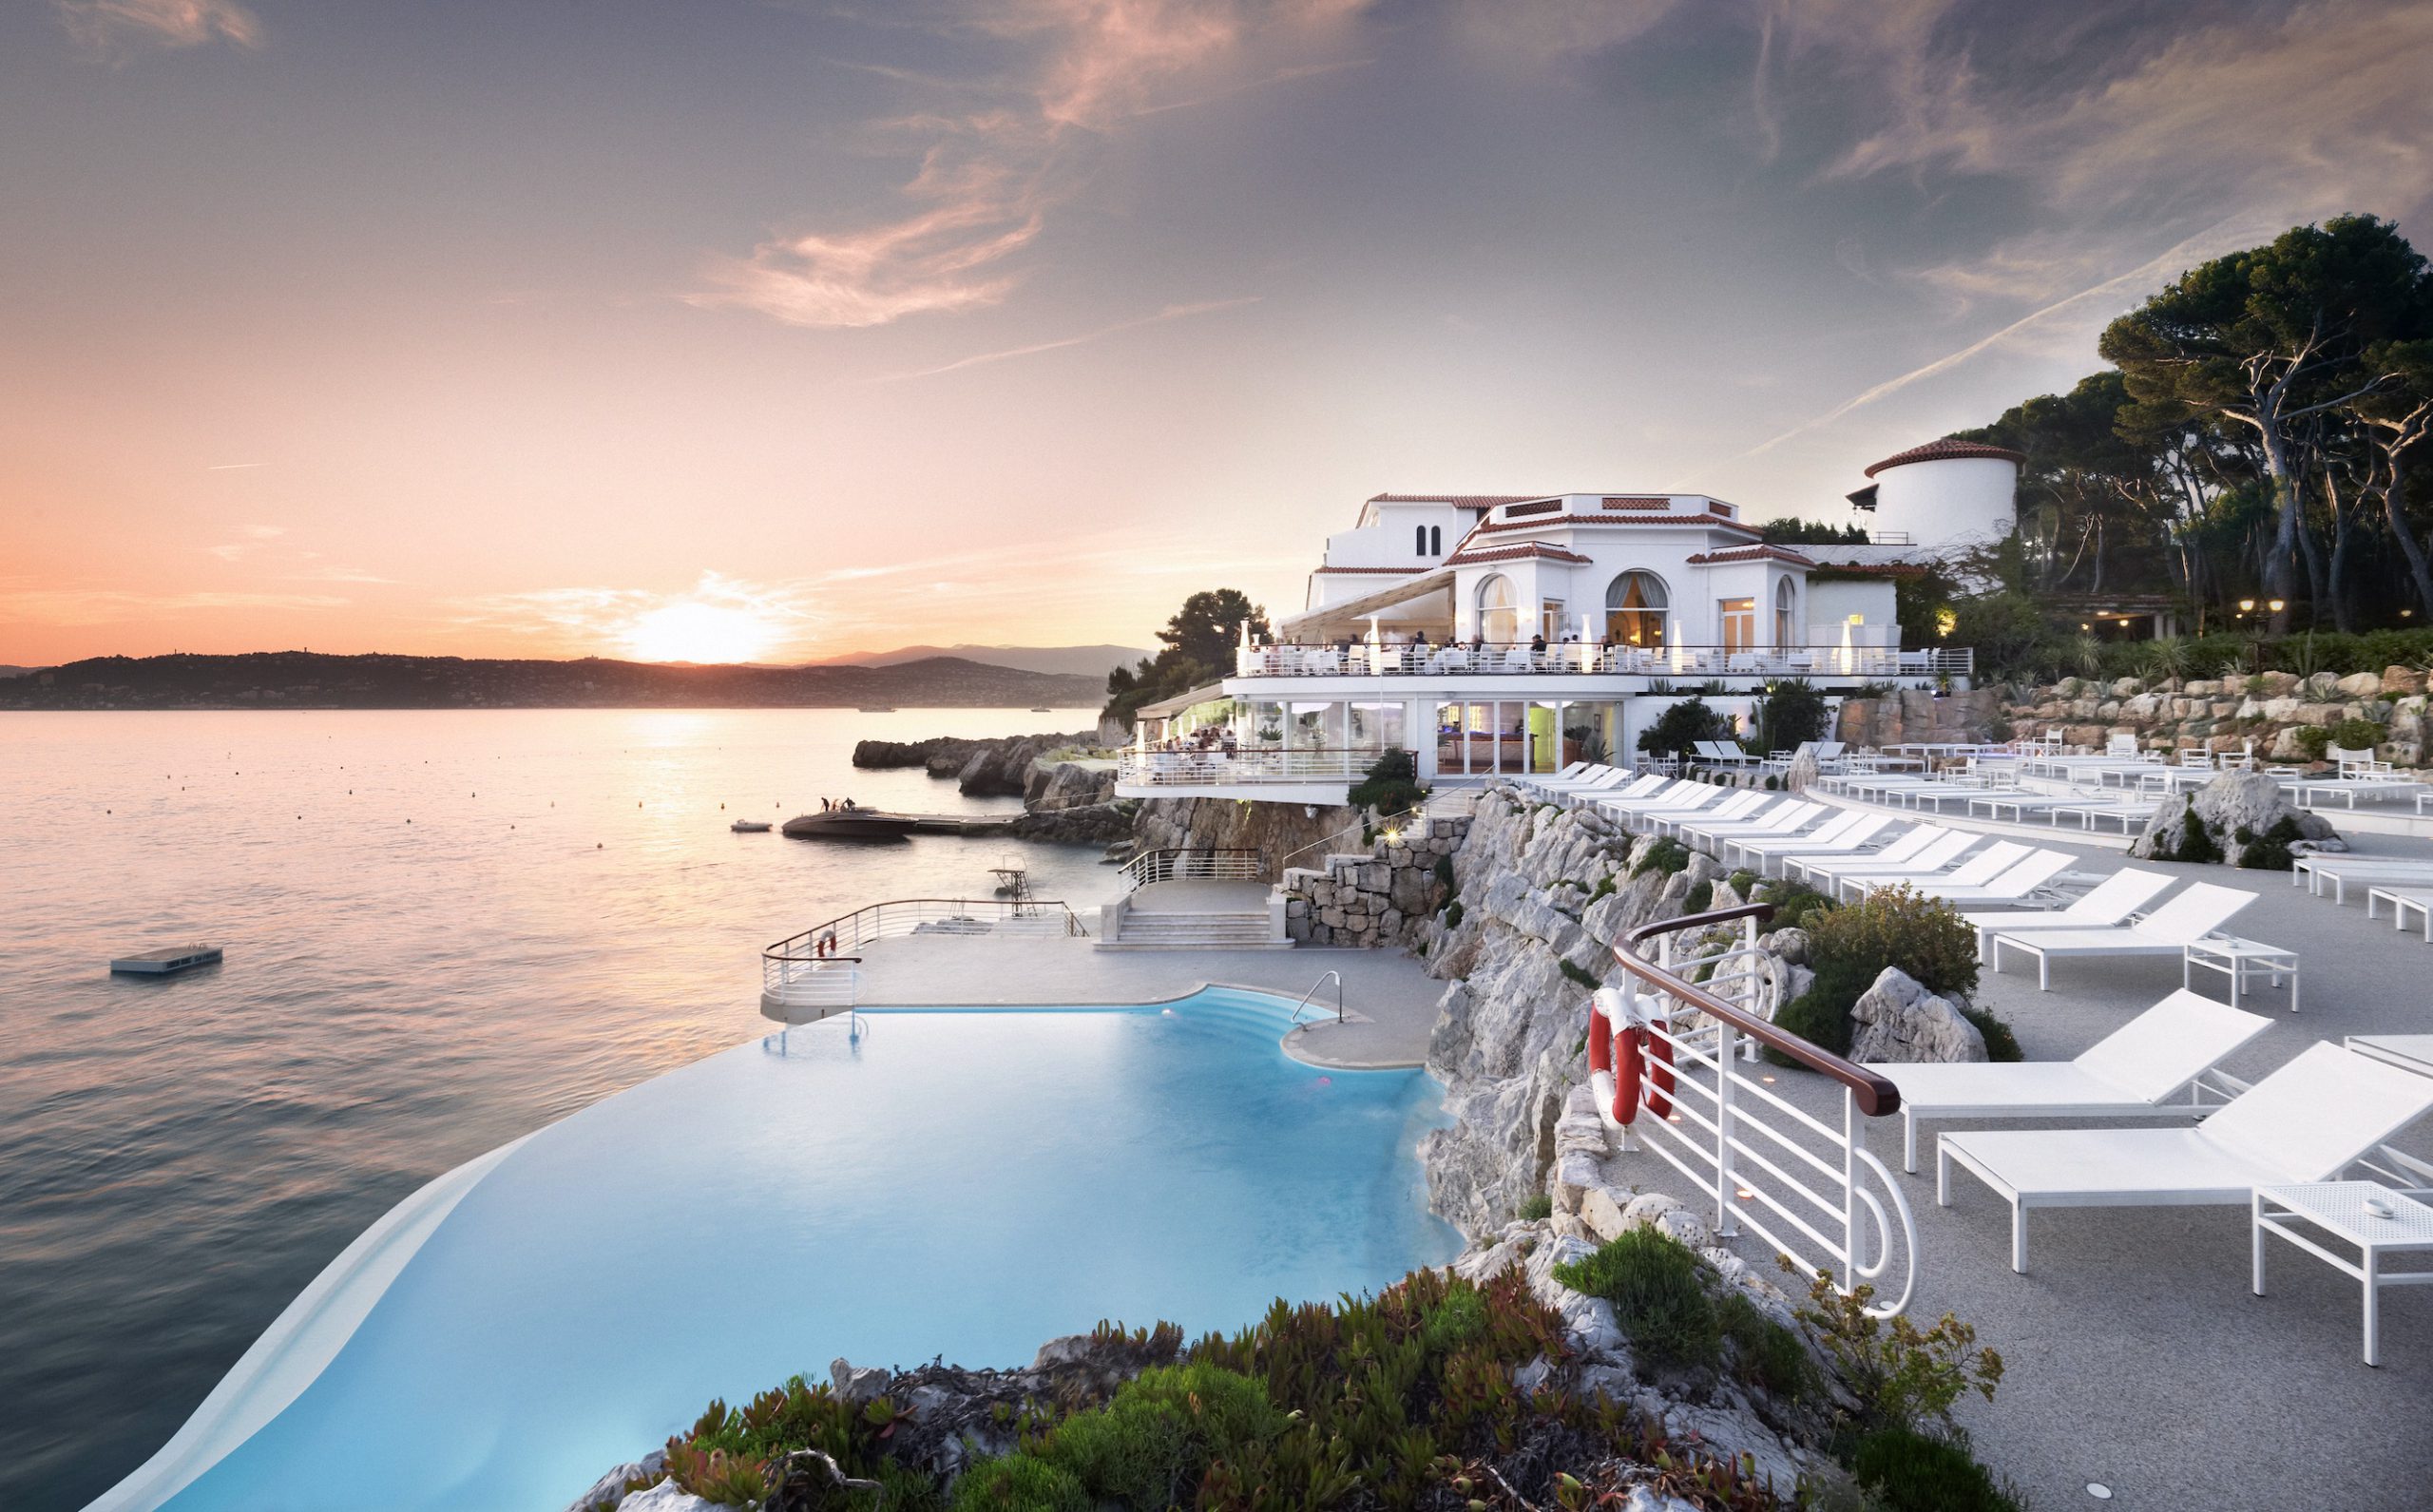 Hotel du Cap-Eden-Roc på Rivieran. Ta en titt i vår guide om du letar efter exklusiva hotell och exklusiva resorts.